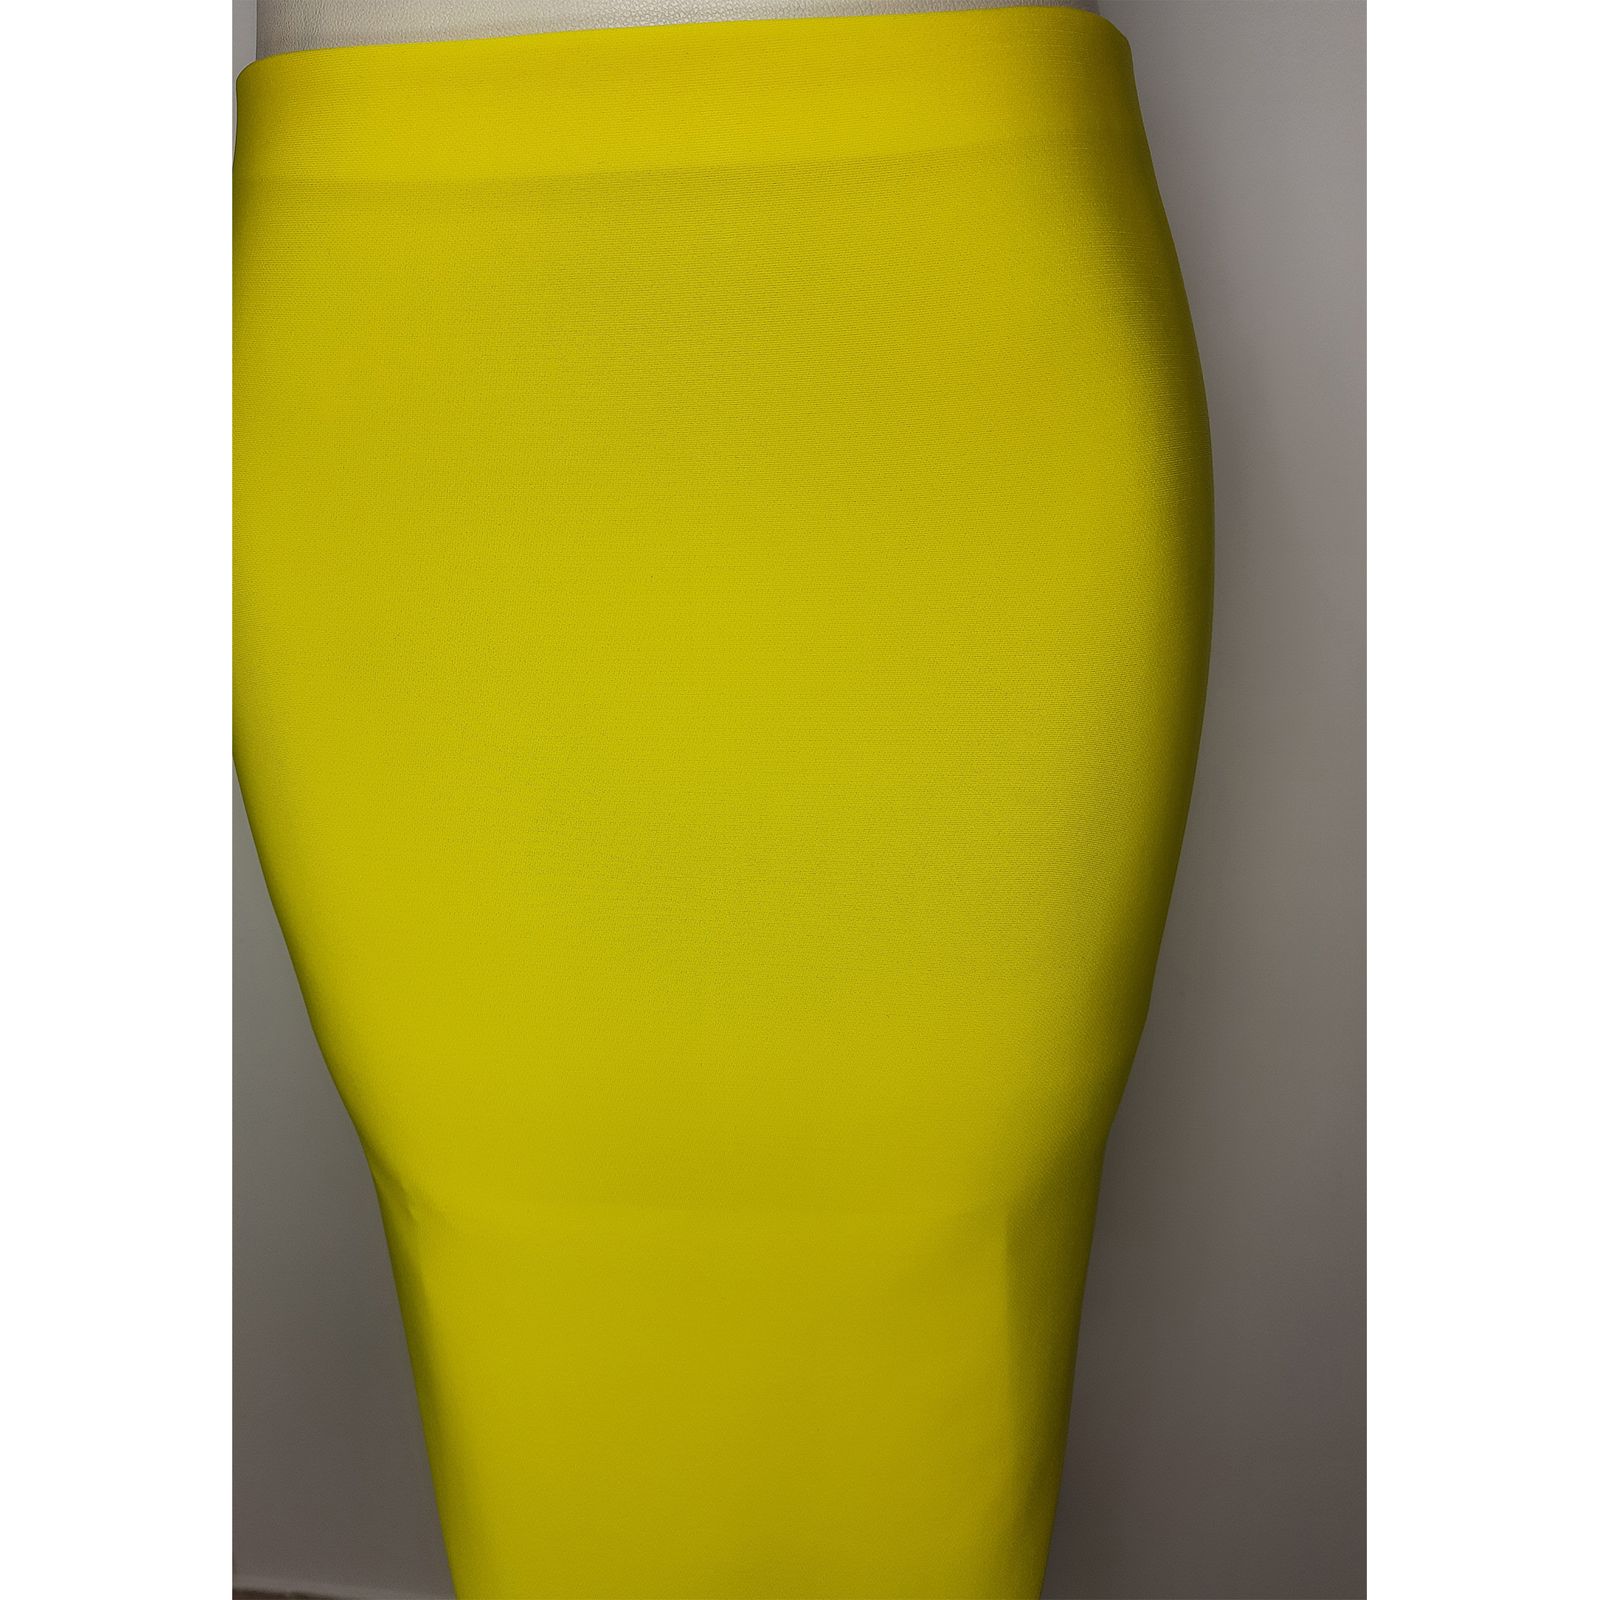 دامن زنانه مدل Dfc002y رنگ زرد -  - 4